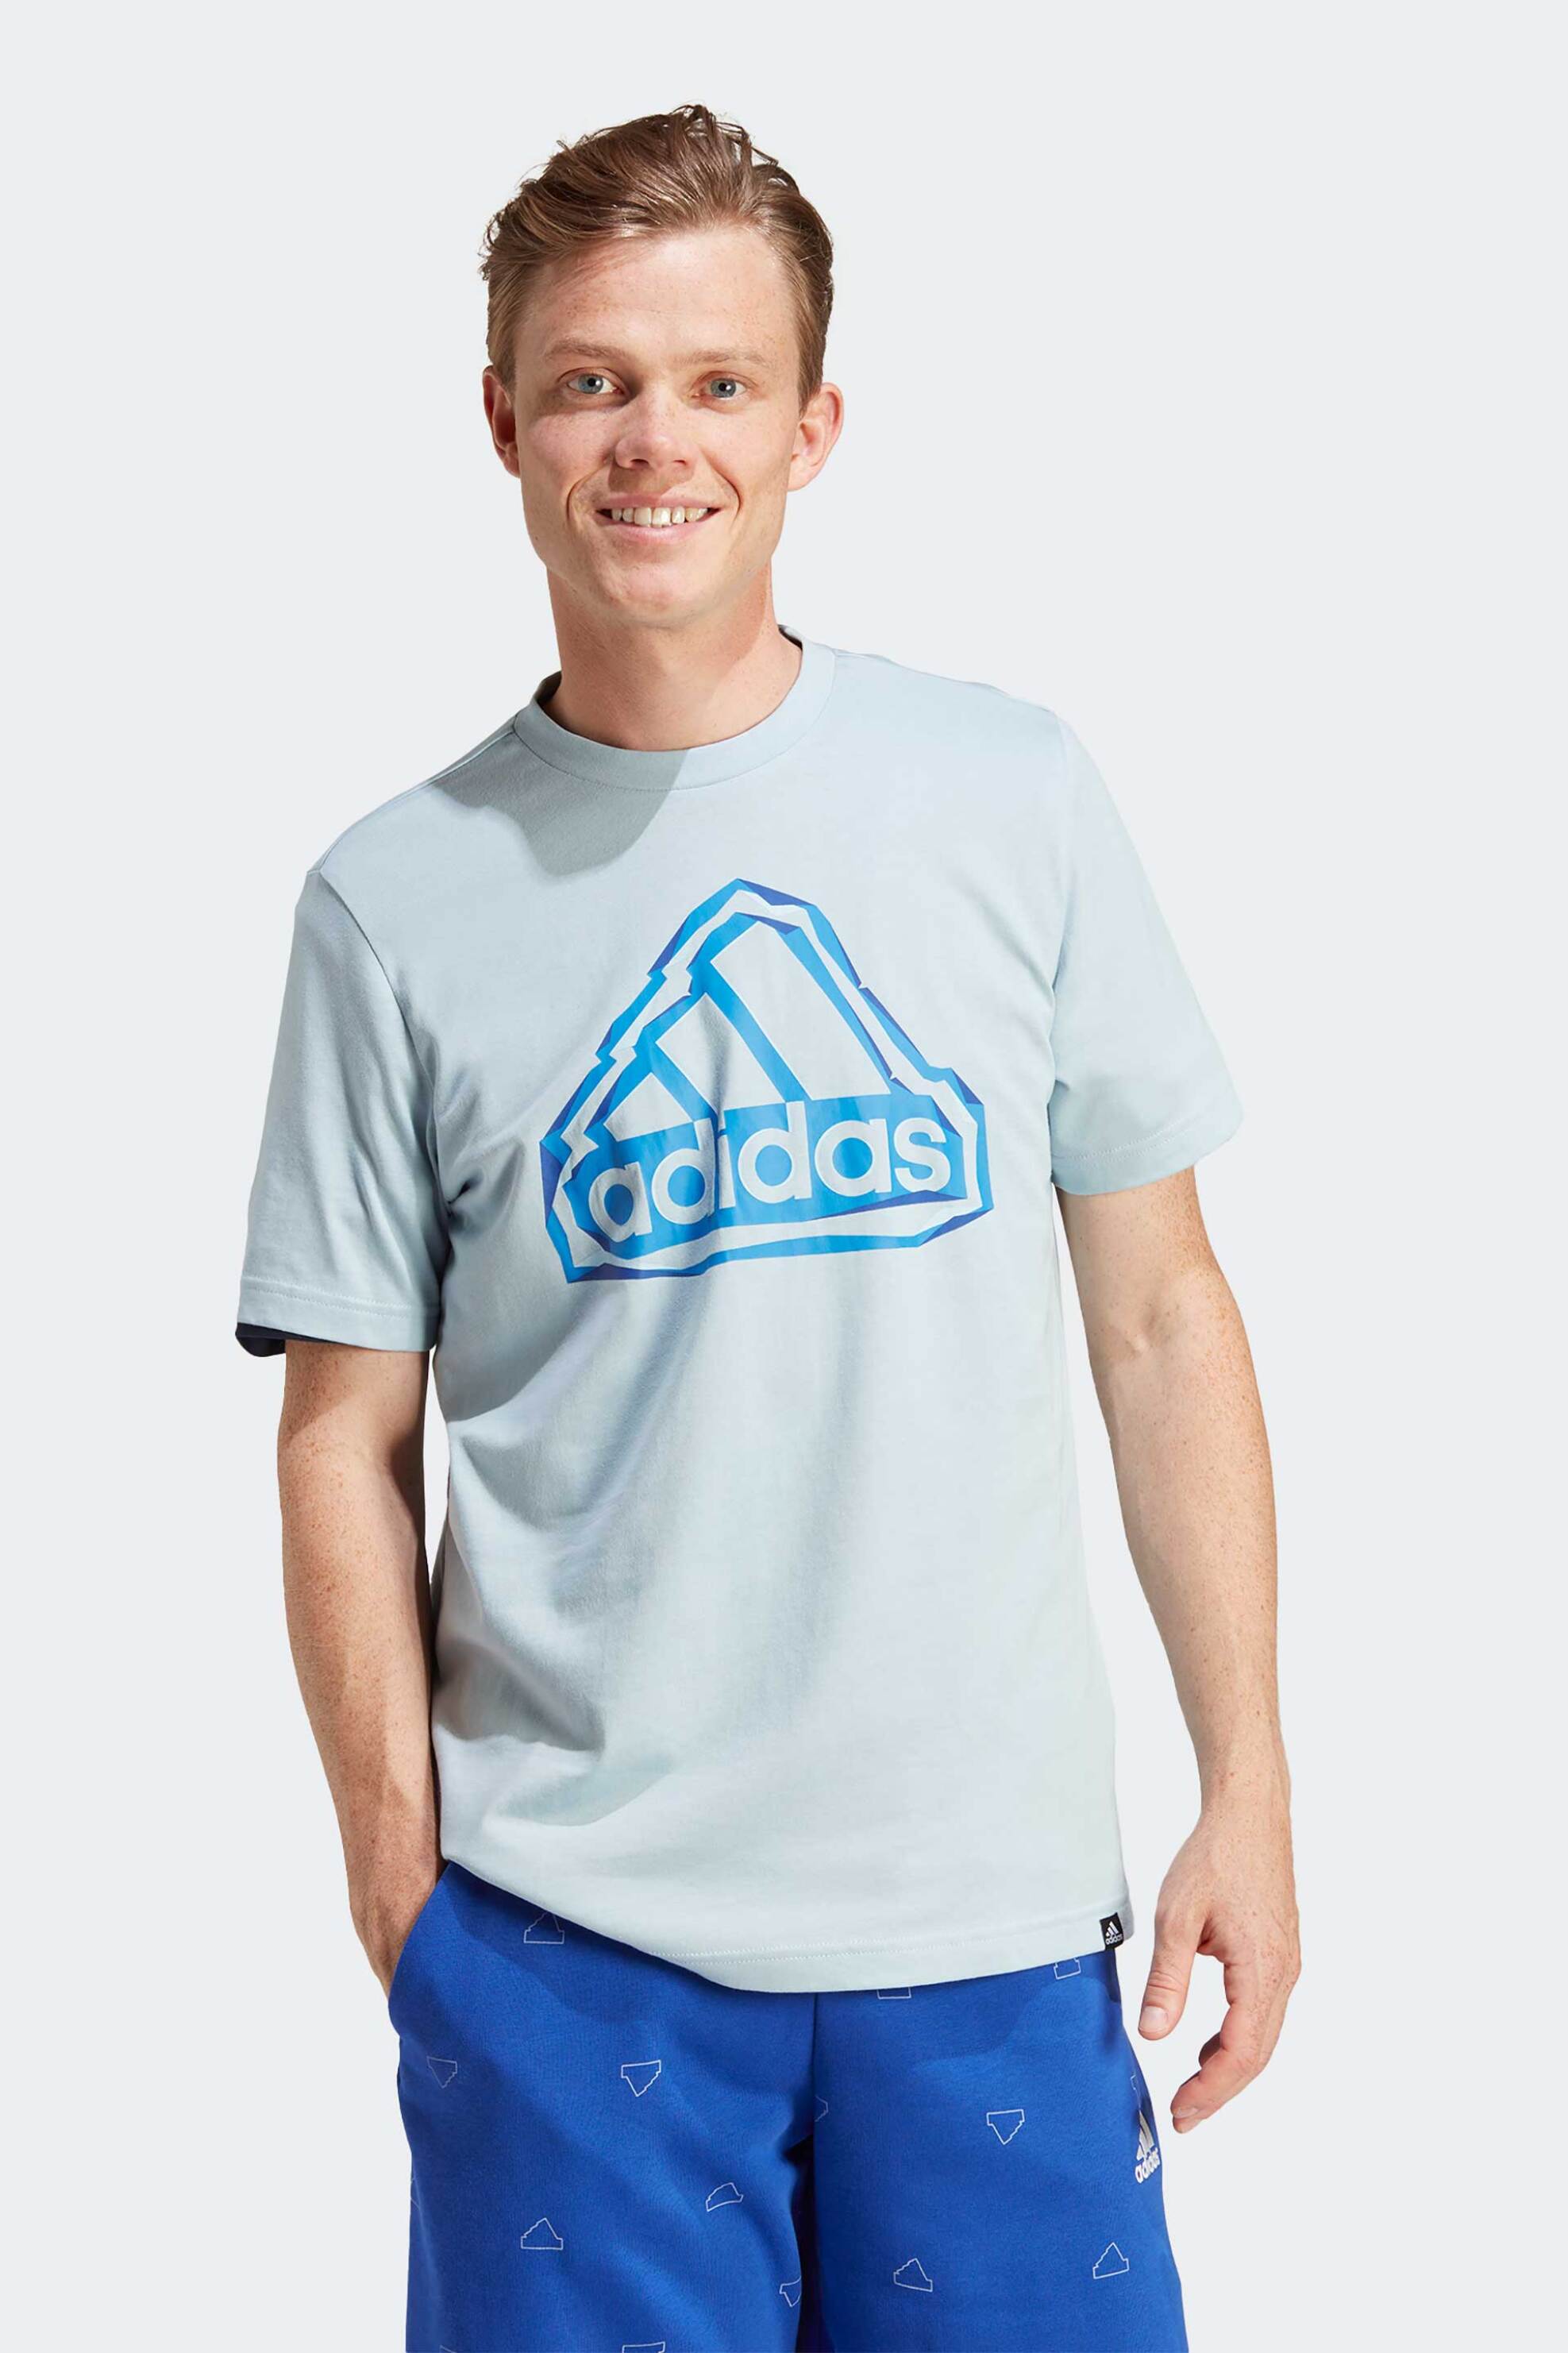 Άνδρας > ΑΘΛΗΤΙΚΑ > Αθλητικά Ρούχα > Αθλητικές Μπλούζες > Αθλητικά T-Shirts Adidas ανδρικό T-shirt με print από καουτσούκ Standard Fit - IM8312 Σιελ